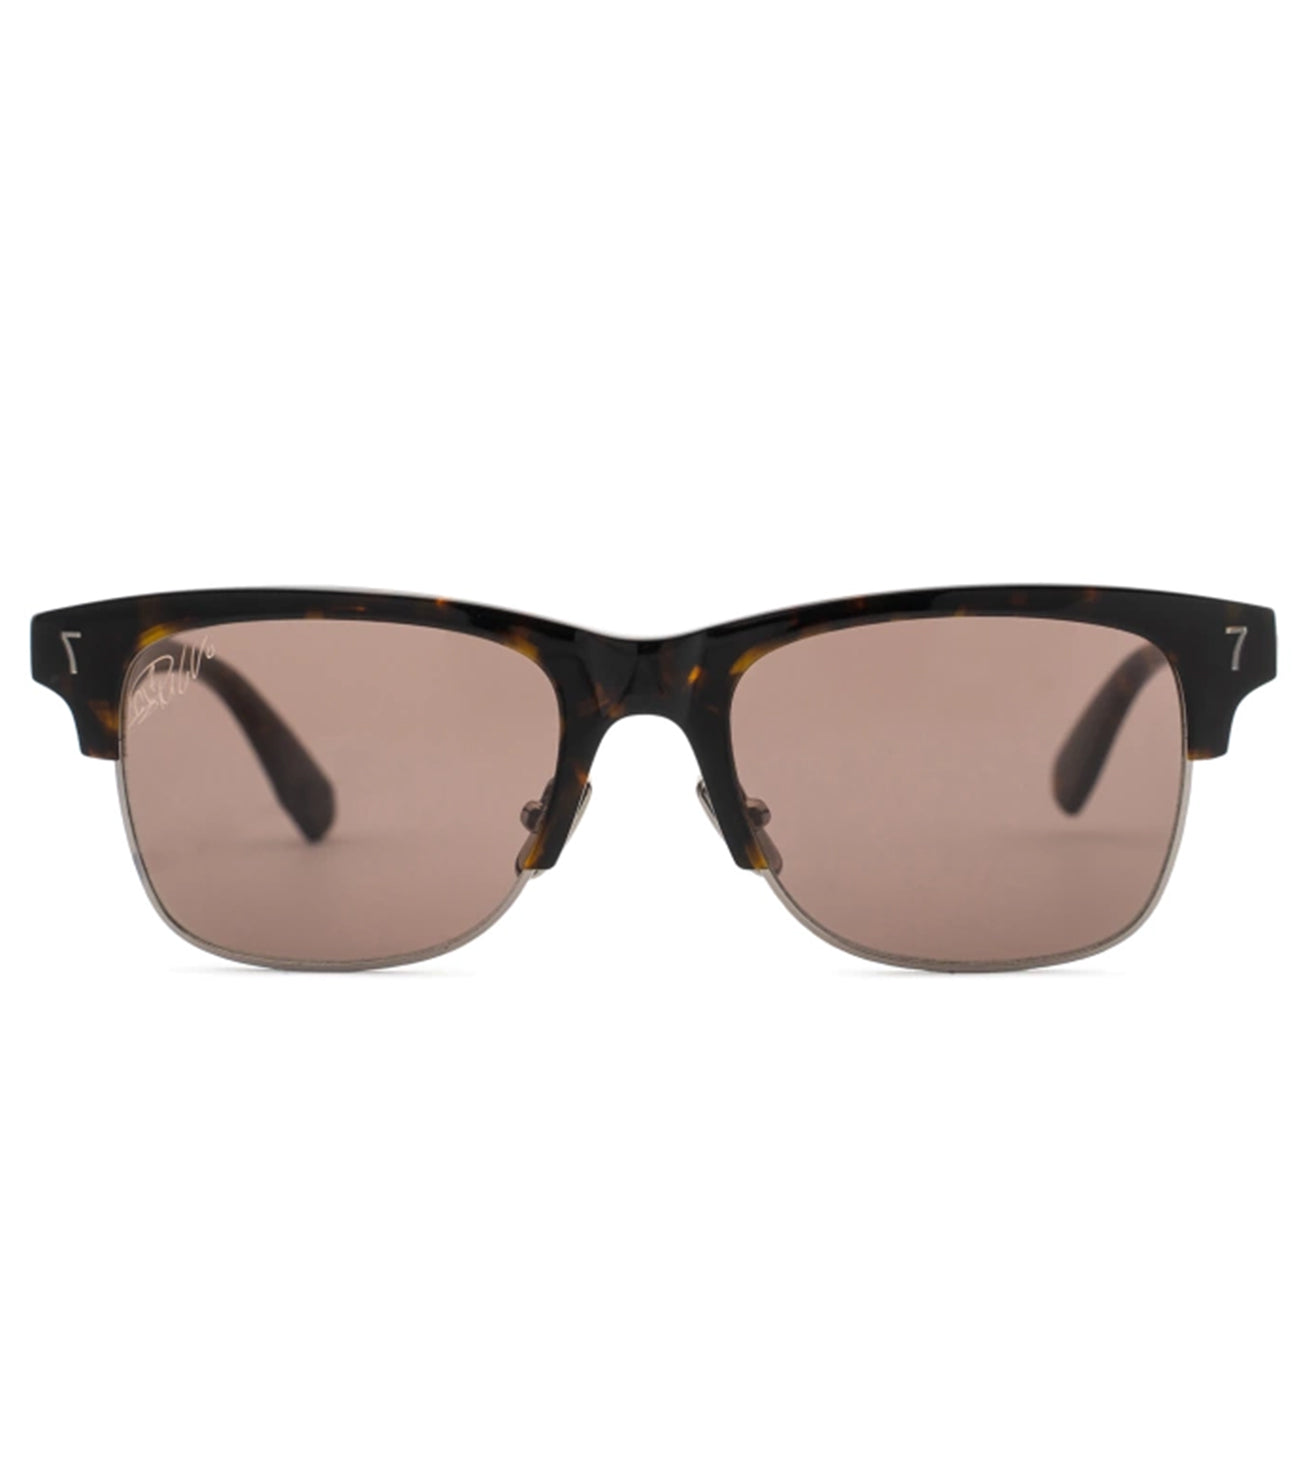 CR7 Men's Brown Square Sunglasses